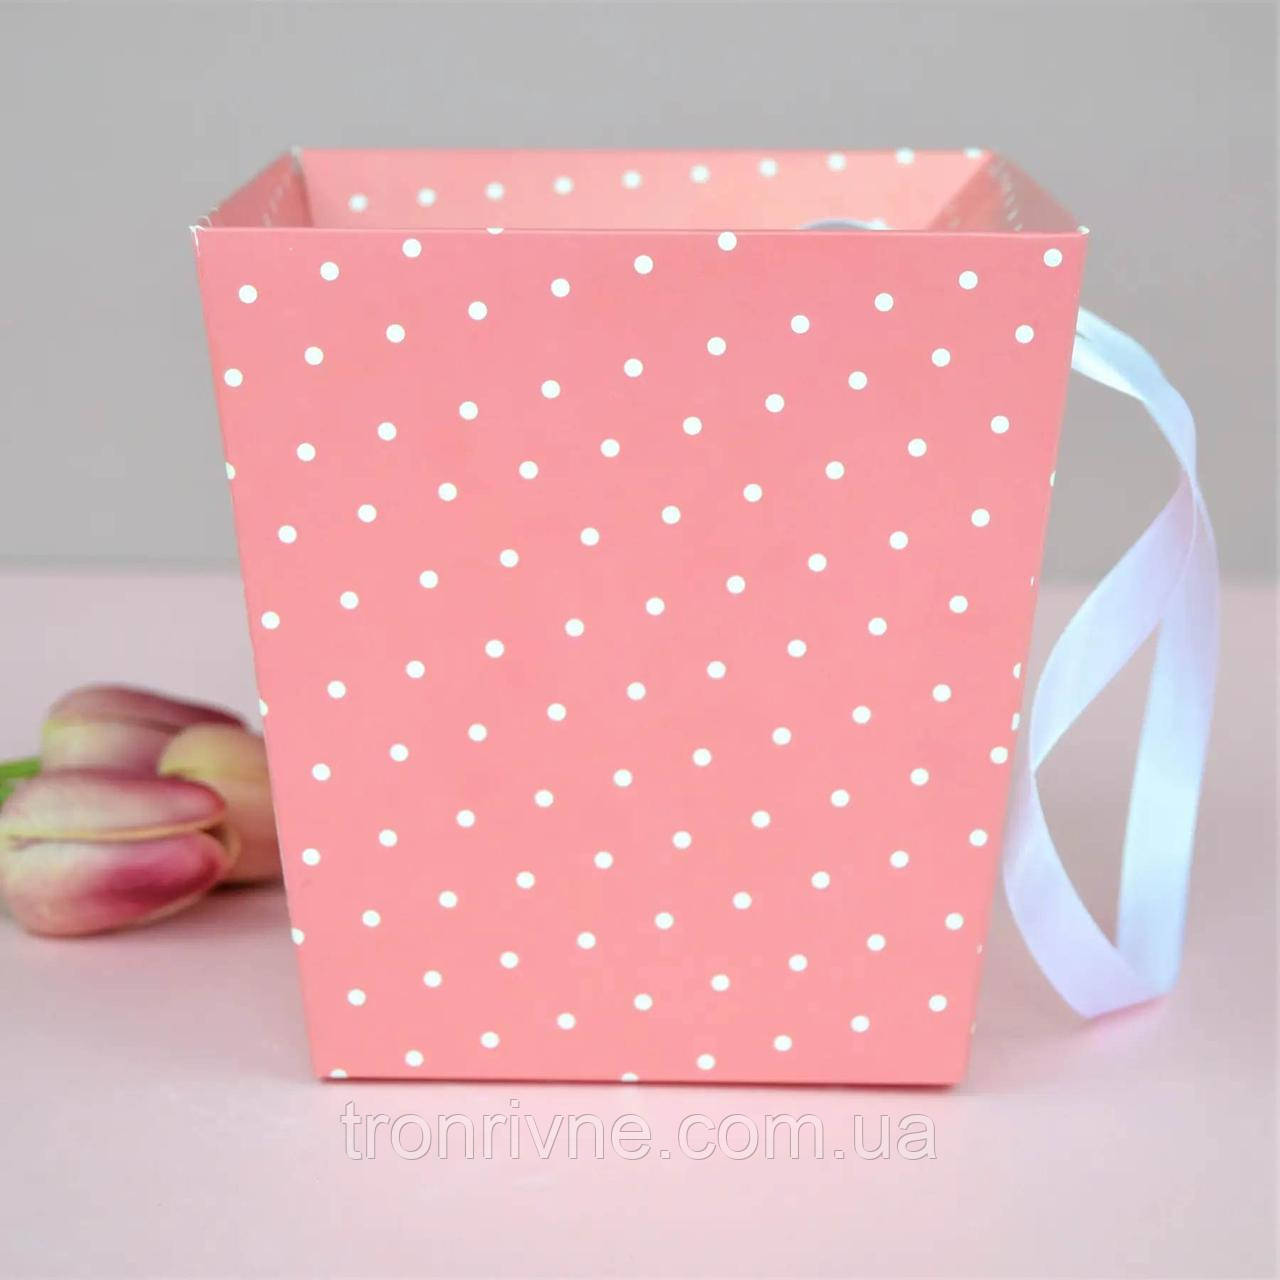 Коробка картонна флористична трапеція зі стрічкою 14х14см, колір - рожева в білий горошо